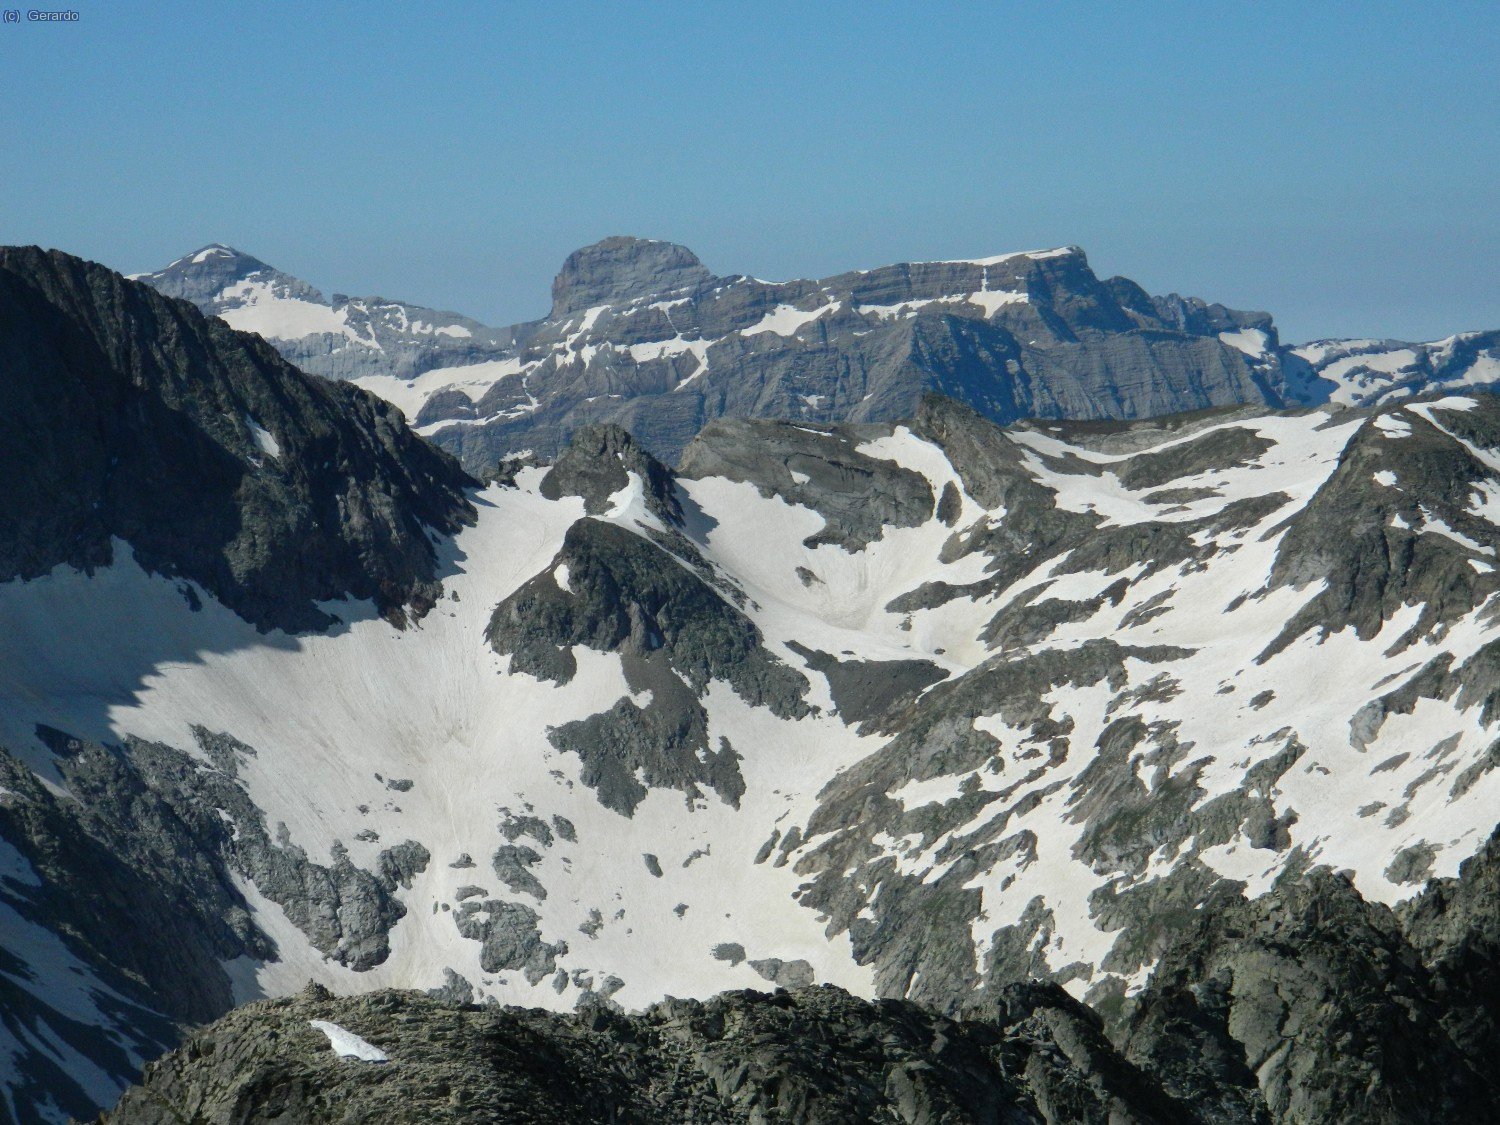 Enlazada con la anterior, detalle (de izquierda a derecha) hacia el Monte Perdido, el mojón del Cilindro de Marboré y el "altiplano" del Marboré, ya sobre el Circo de Gavarnie.